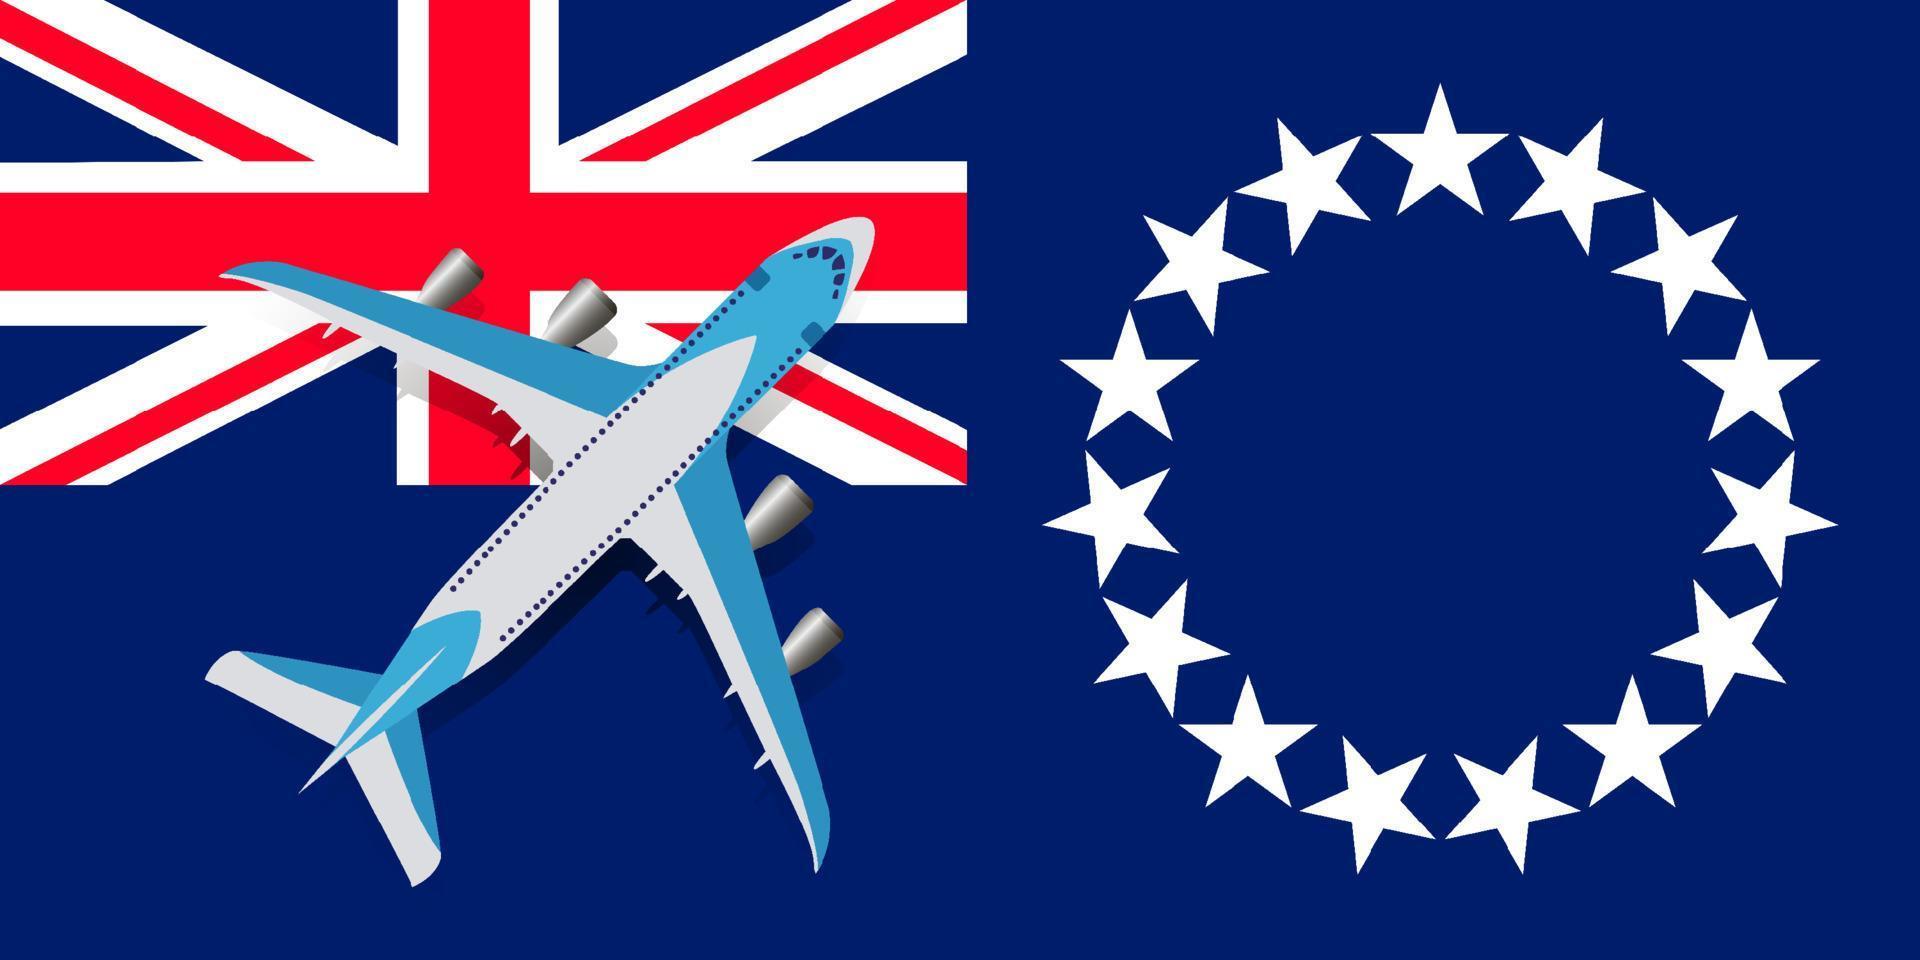 vektor illustration av ett passagerarplan som flyger över flaggan av Cook Island. begreppet turism och resor